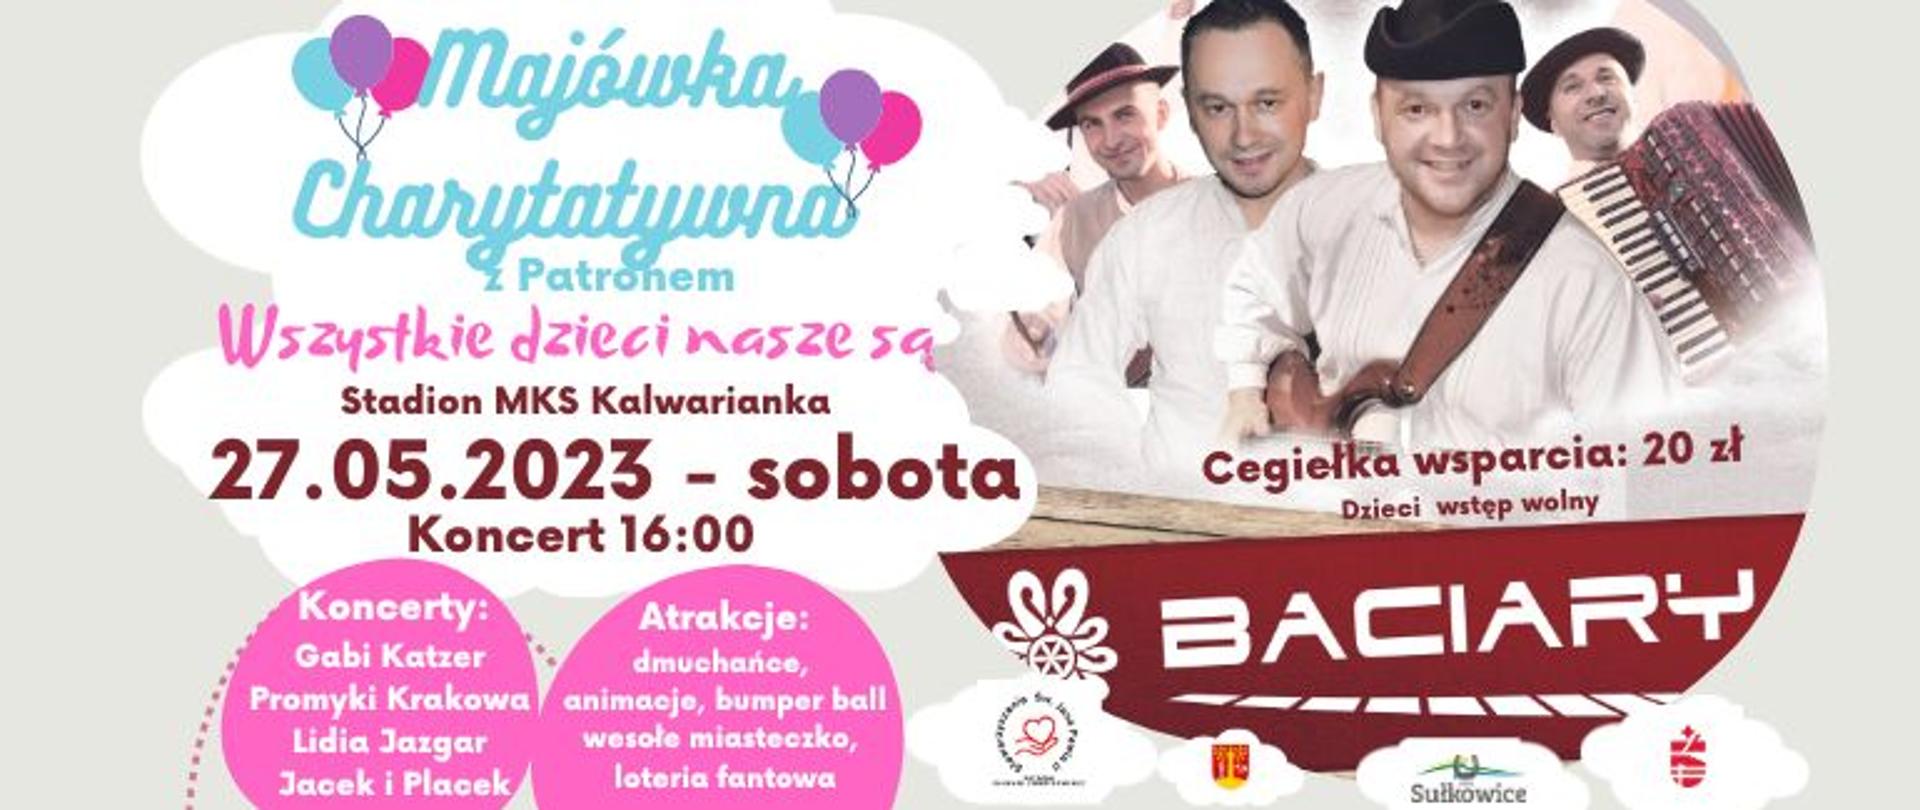 Plakat informujący - Majówka Charytatywna z patronem, zagrają „Baciary”